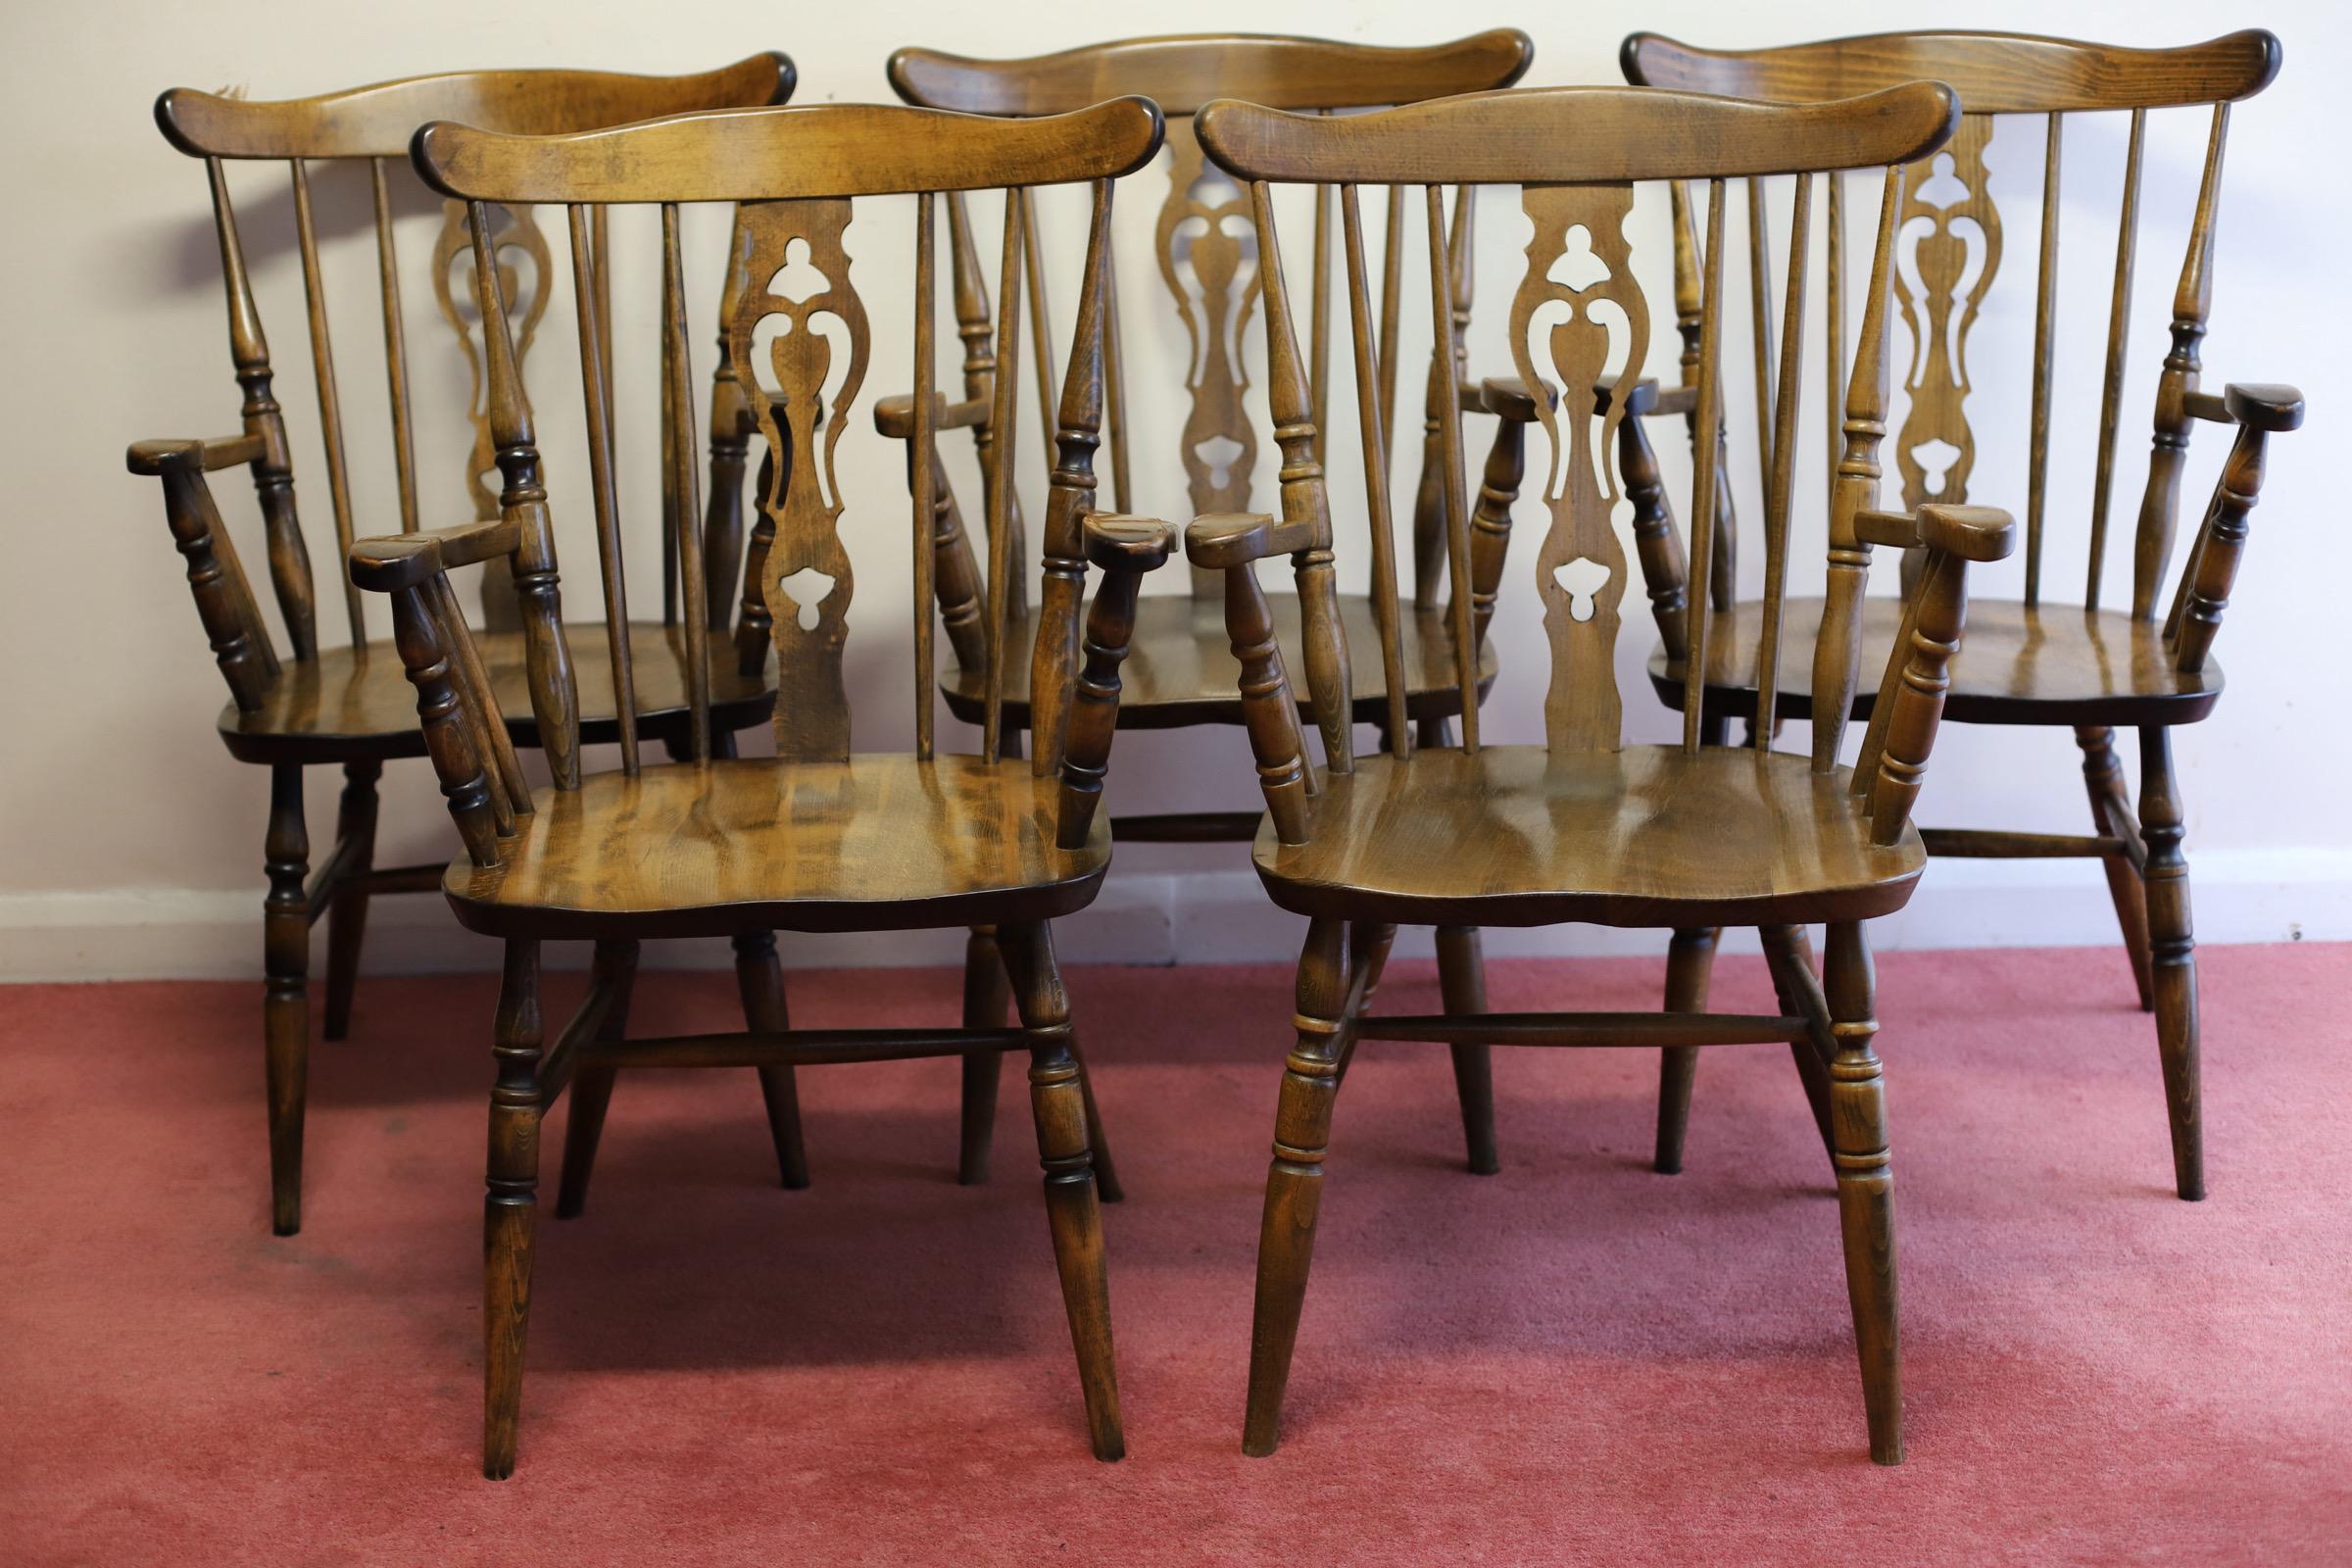 Nous avons le plaisir d'offrir à la vente ce fantastique ensemble de cinq fauteuils de ferme de style Windsor en bon état. 
N'hésitez pas à me contacter si vous avez des questions.
Veuillez regarder les photos de plus près car elles font partie de